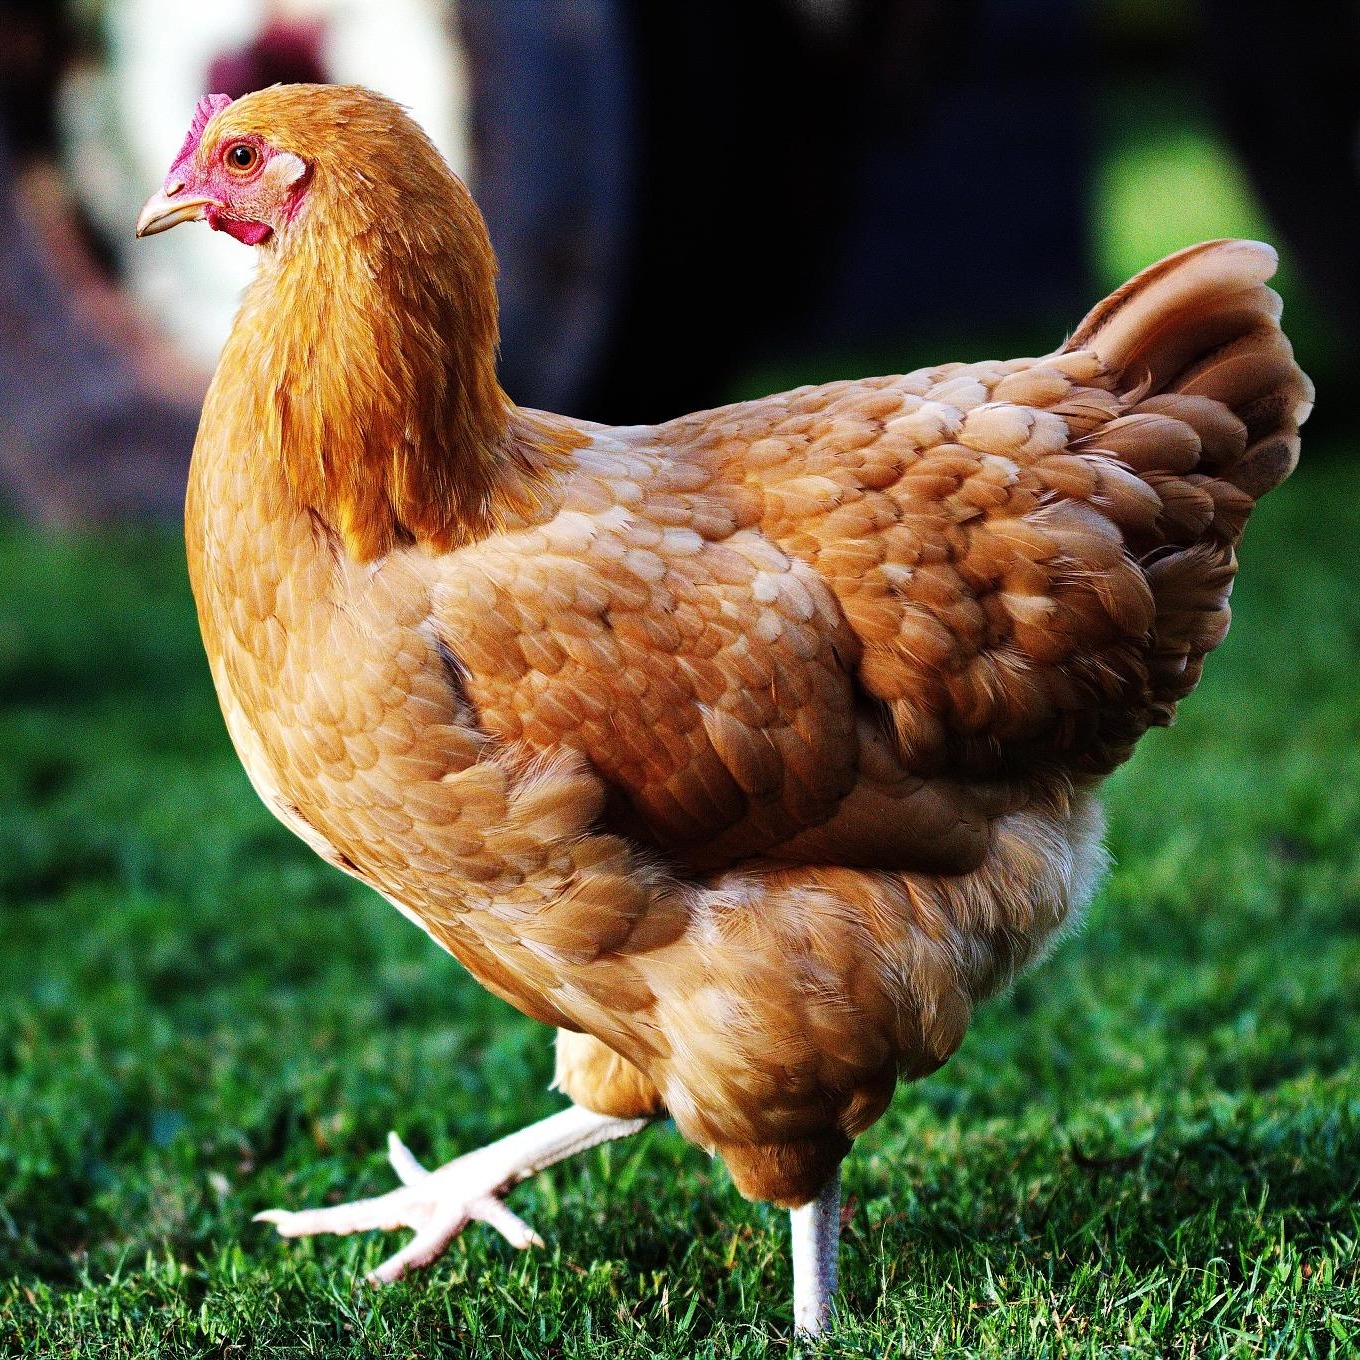 土鸡苗批发绿壳蛋鸡苗 品种众多 蛋鸡苗批发 常年出售各类禽苗 质优价廉